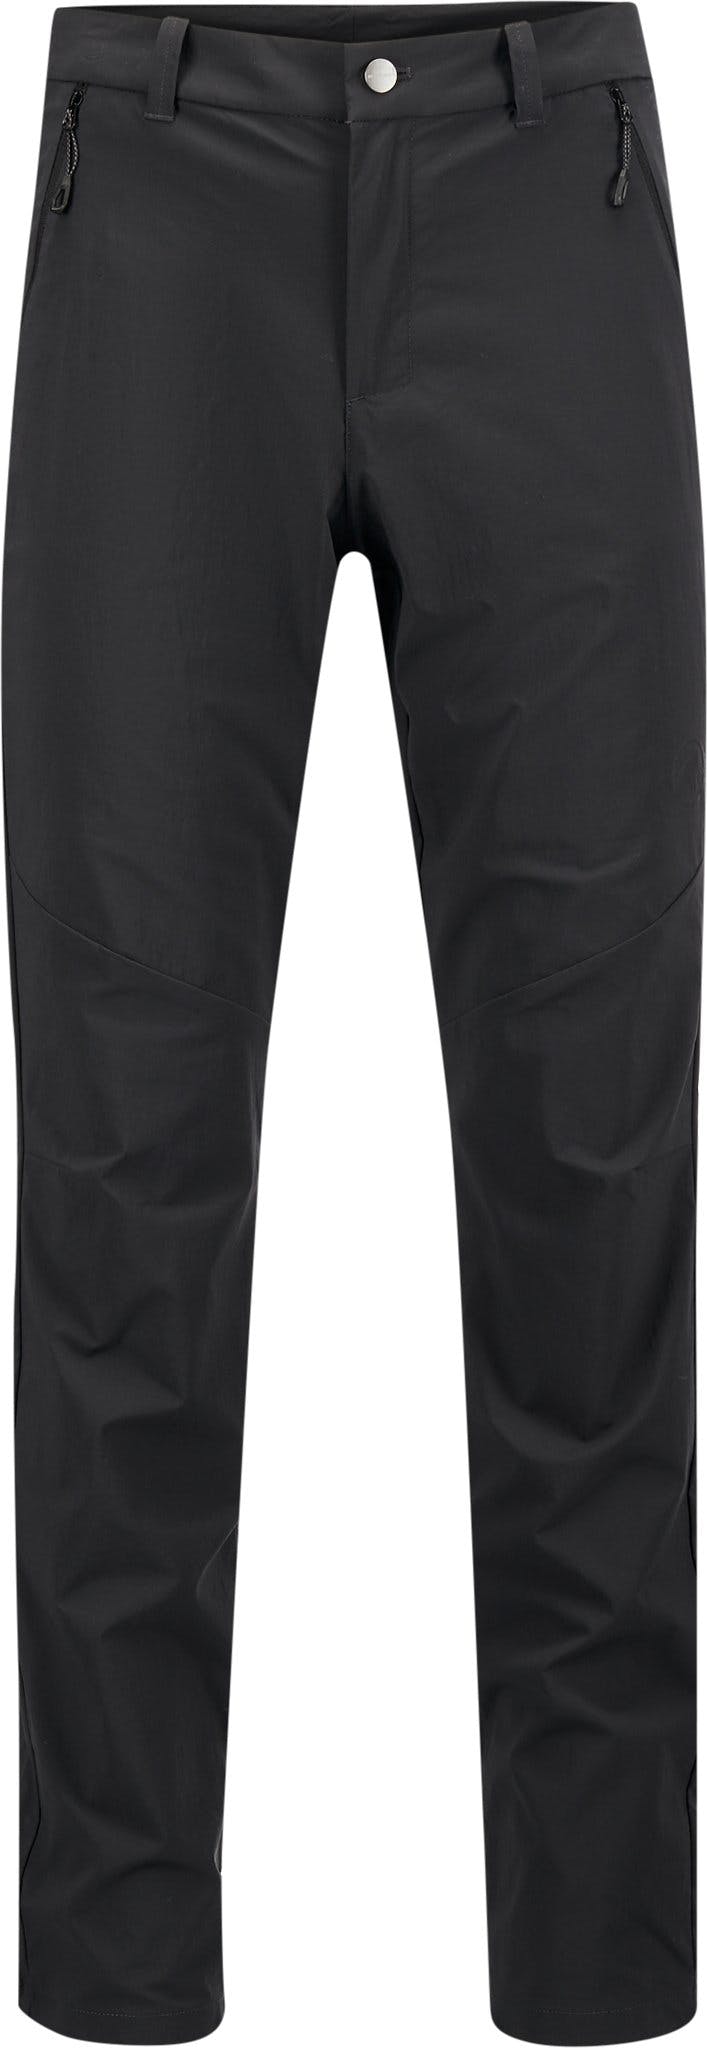 Numéro de l'image de la galerie de produits 1 pour le produit Pantalon de randonnée RG - Homme